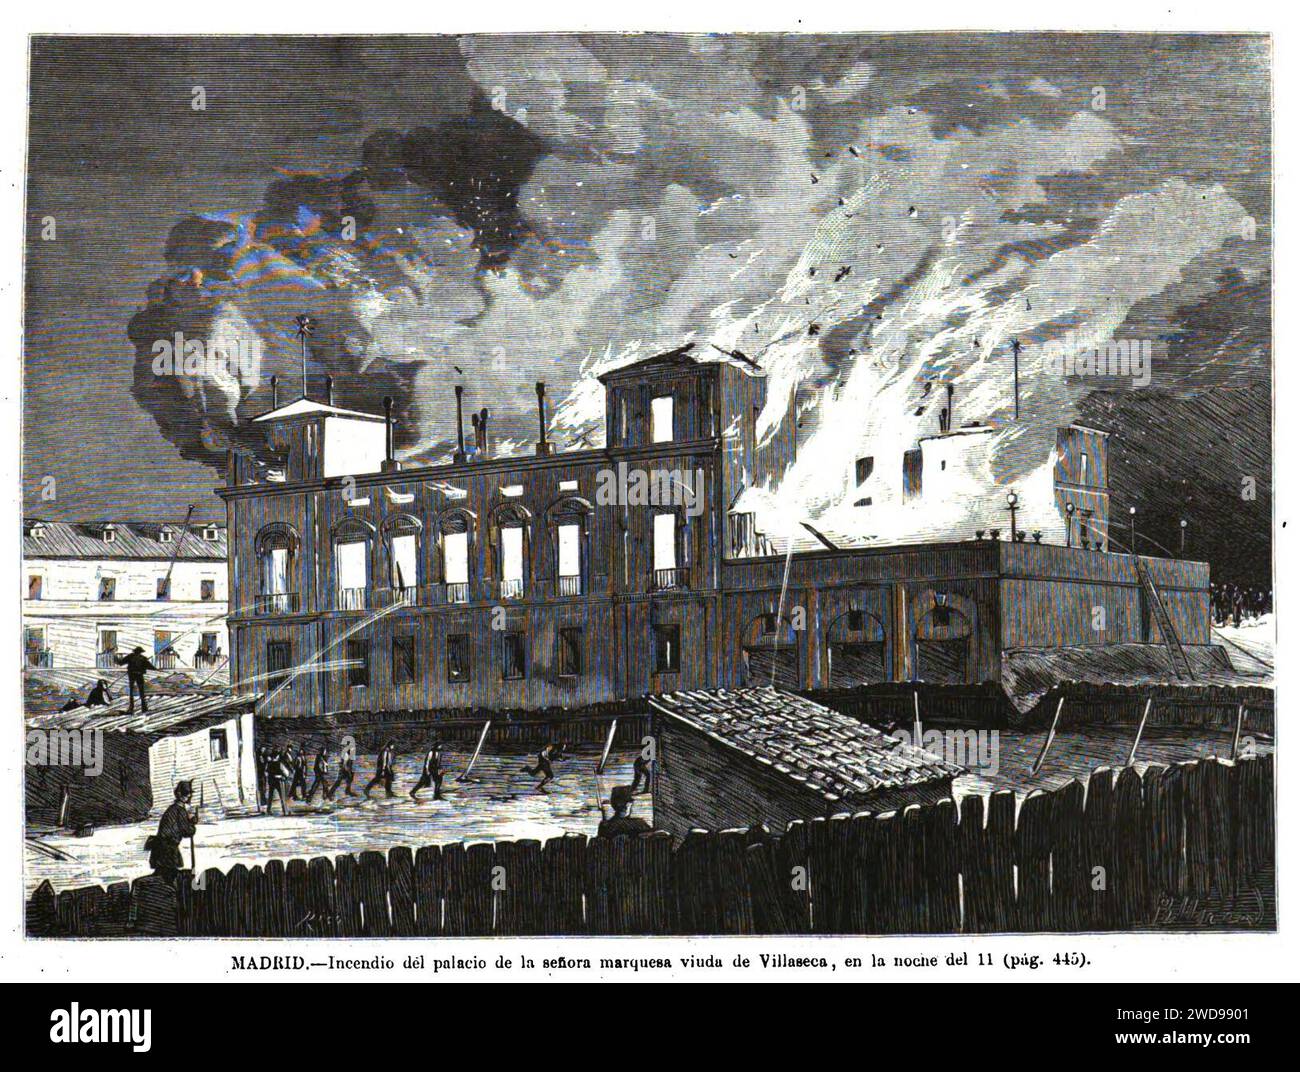 1872-07-24, La Ilustración Española y Americana, Madrid, Incendio del palacio de la señora marquesa viuda de Villaseca, en la noche del 11. Stock Photo